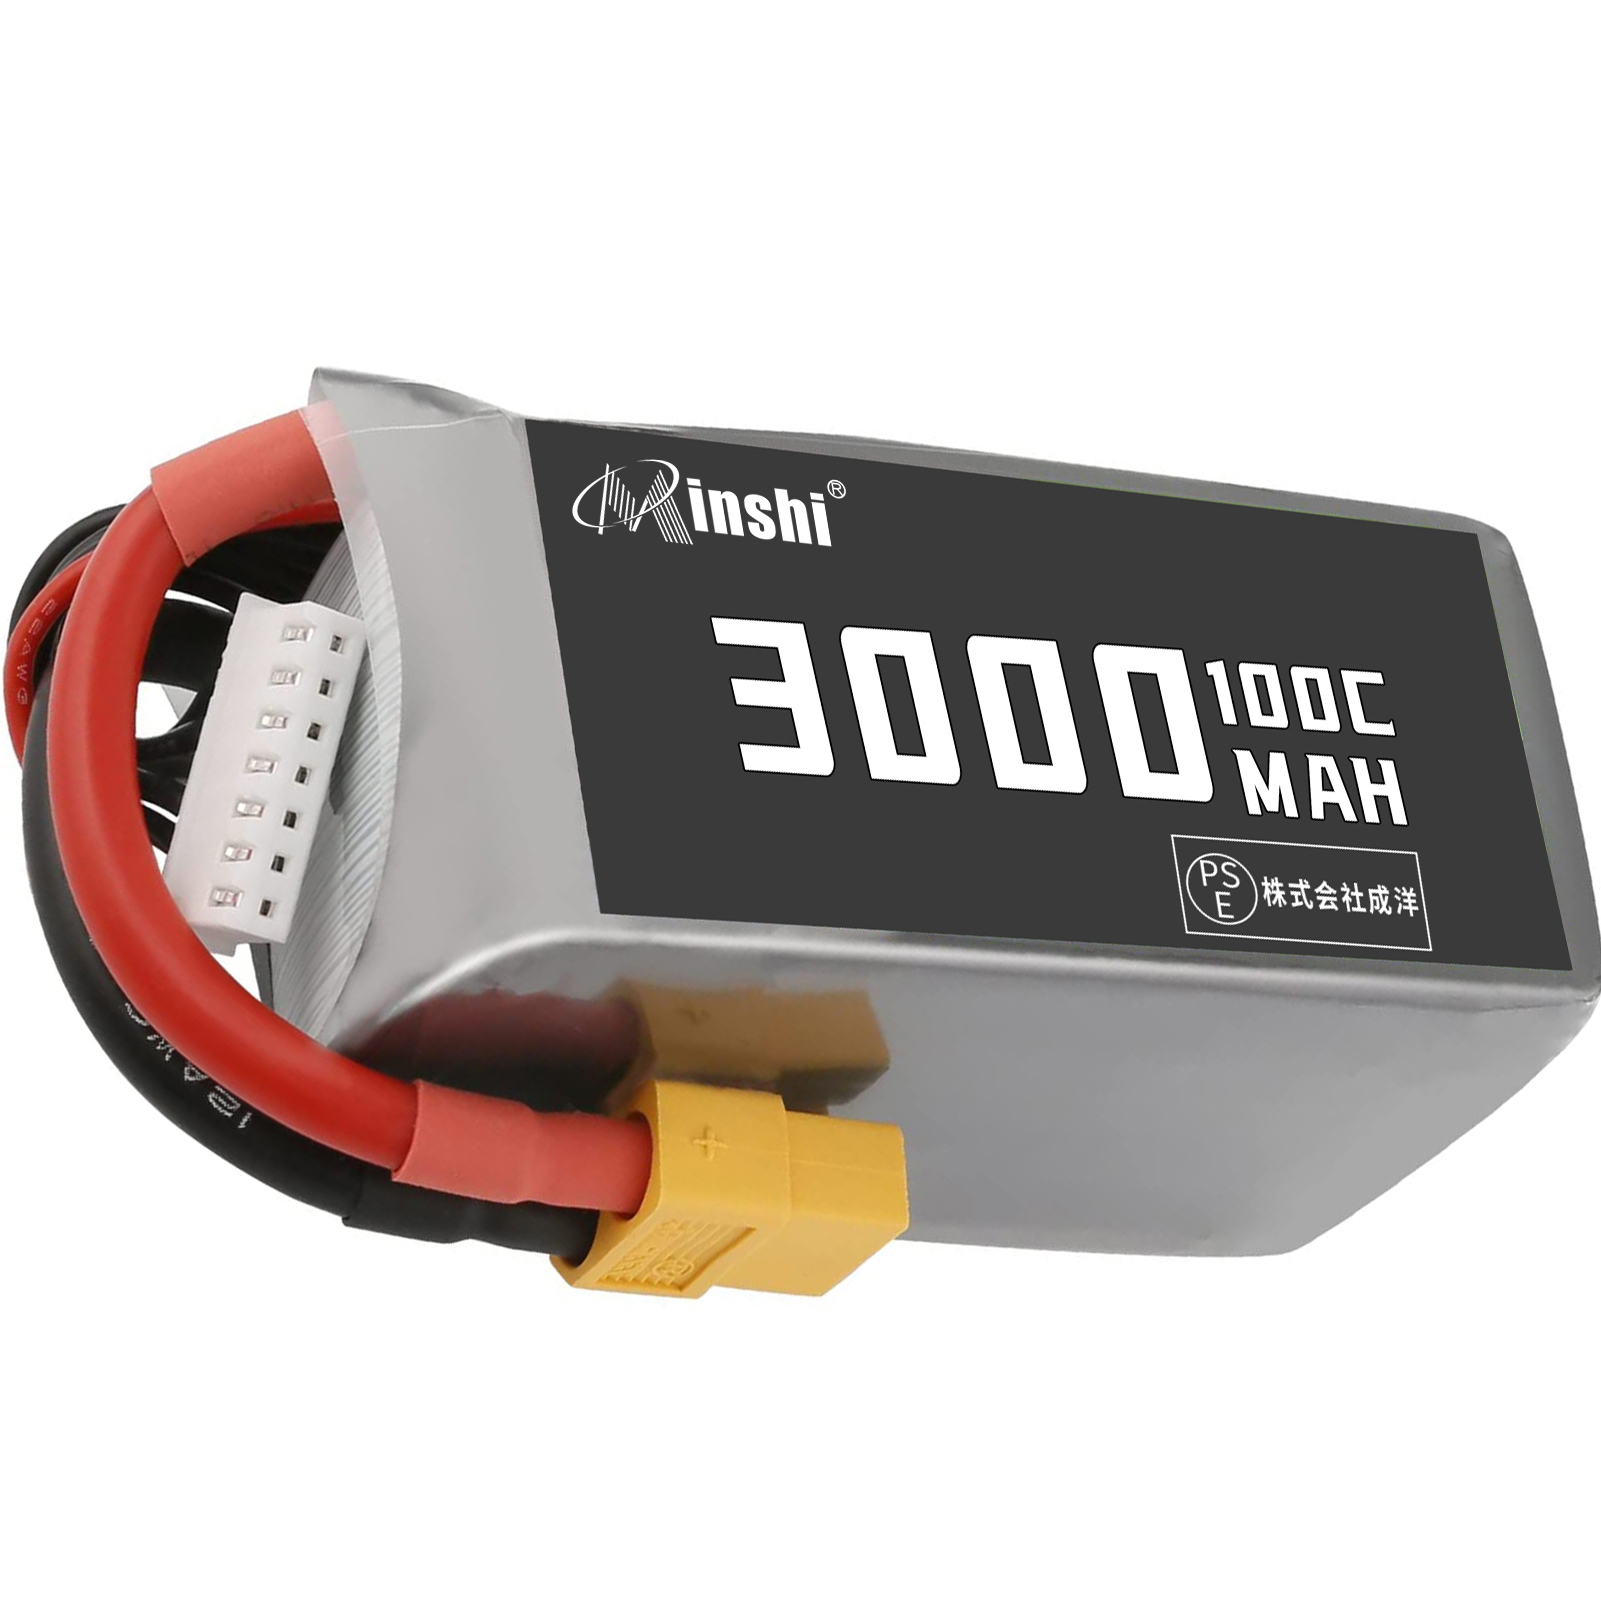 【おもちゃ専用】minshi XT60【1300mAh 22.2V】RCカー/レーシングカー多種類RCモデル互換用 高品質な互換バッテリー